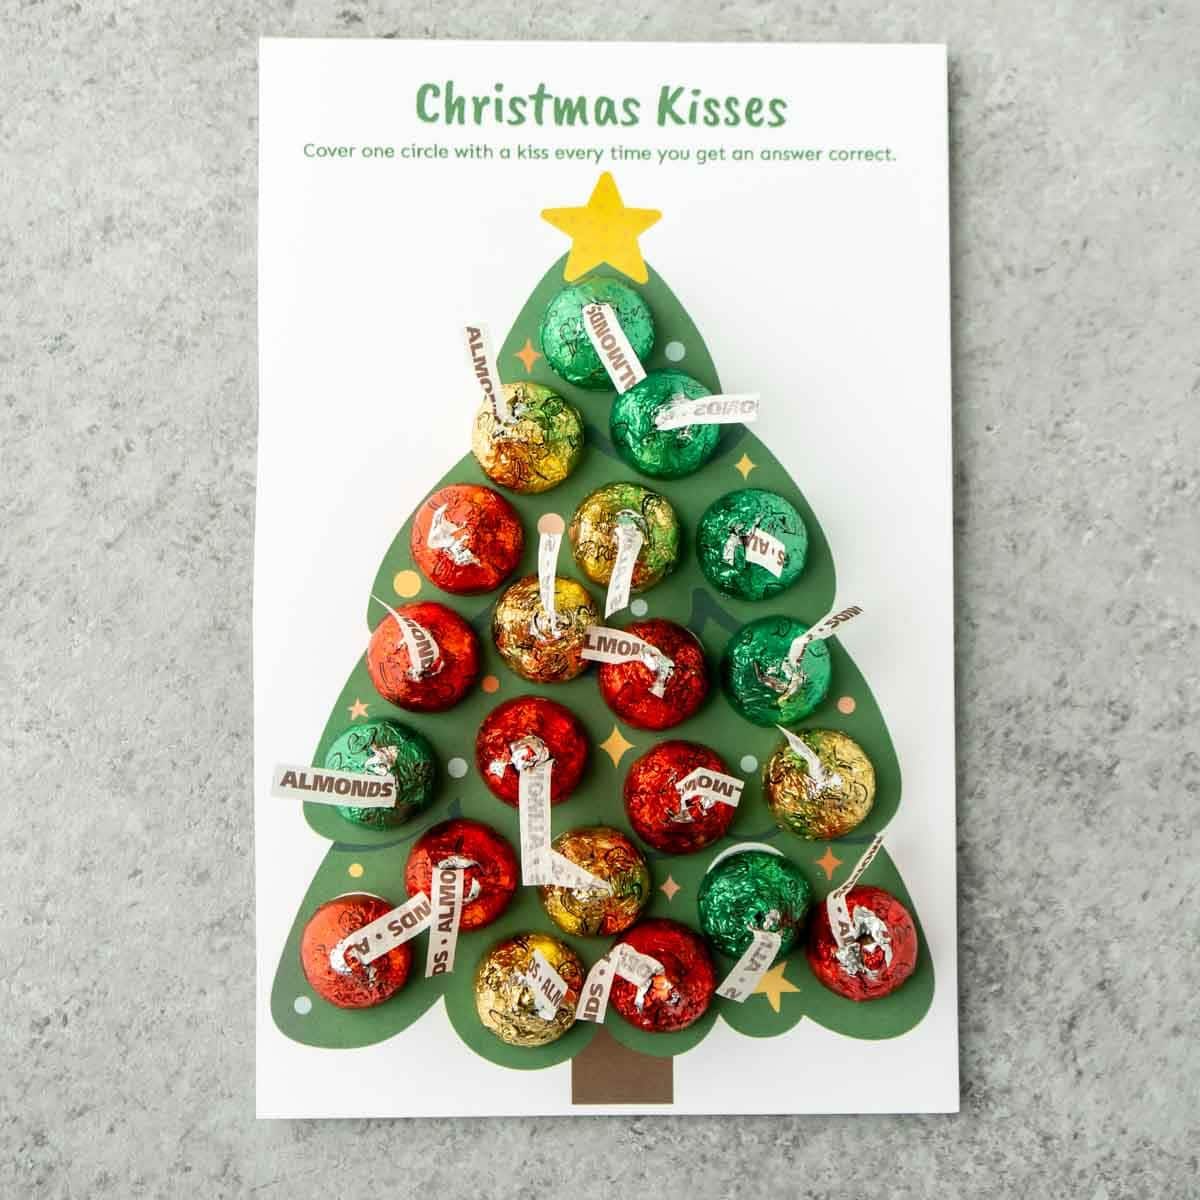 Christmas kisses trivia-spill med Hershey